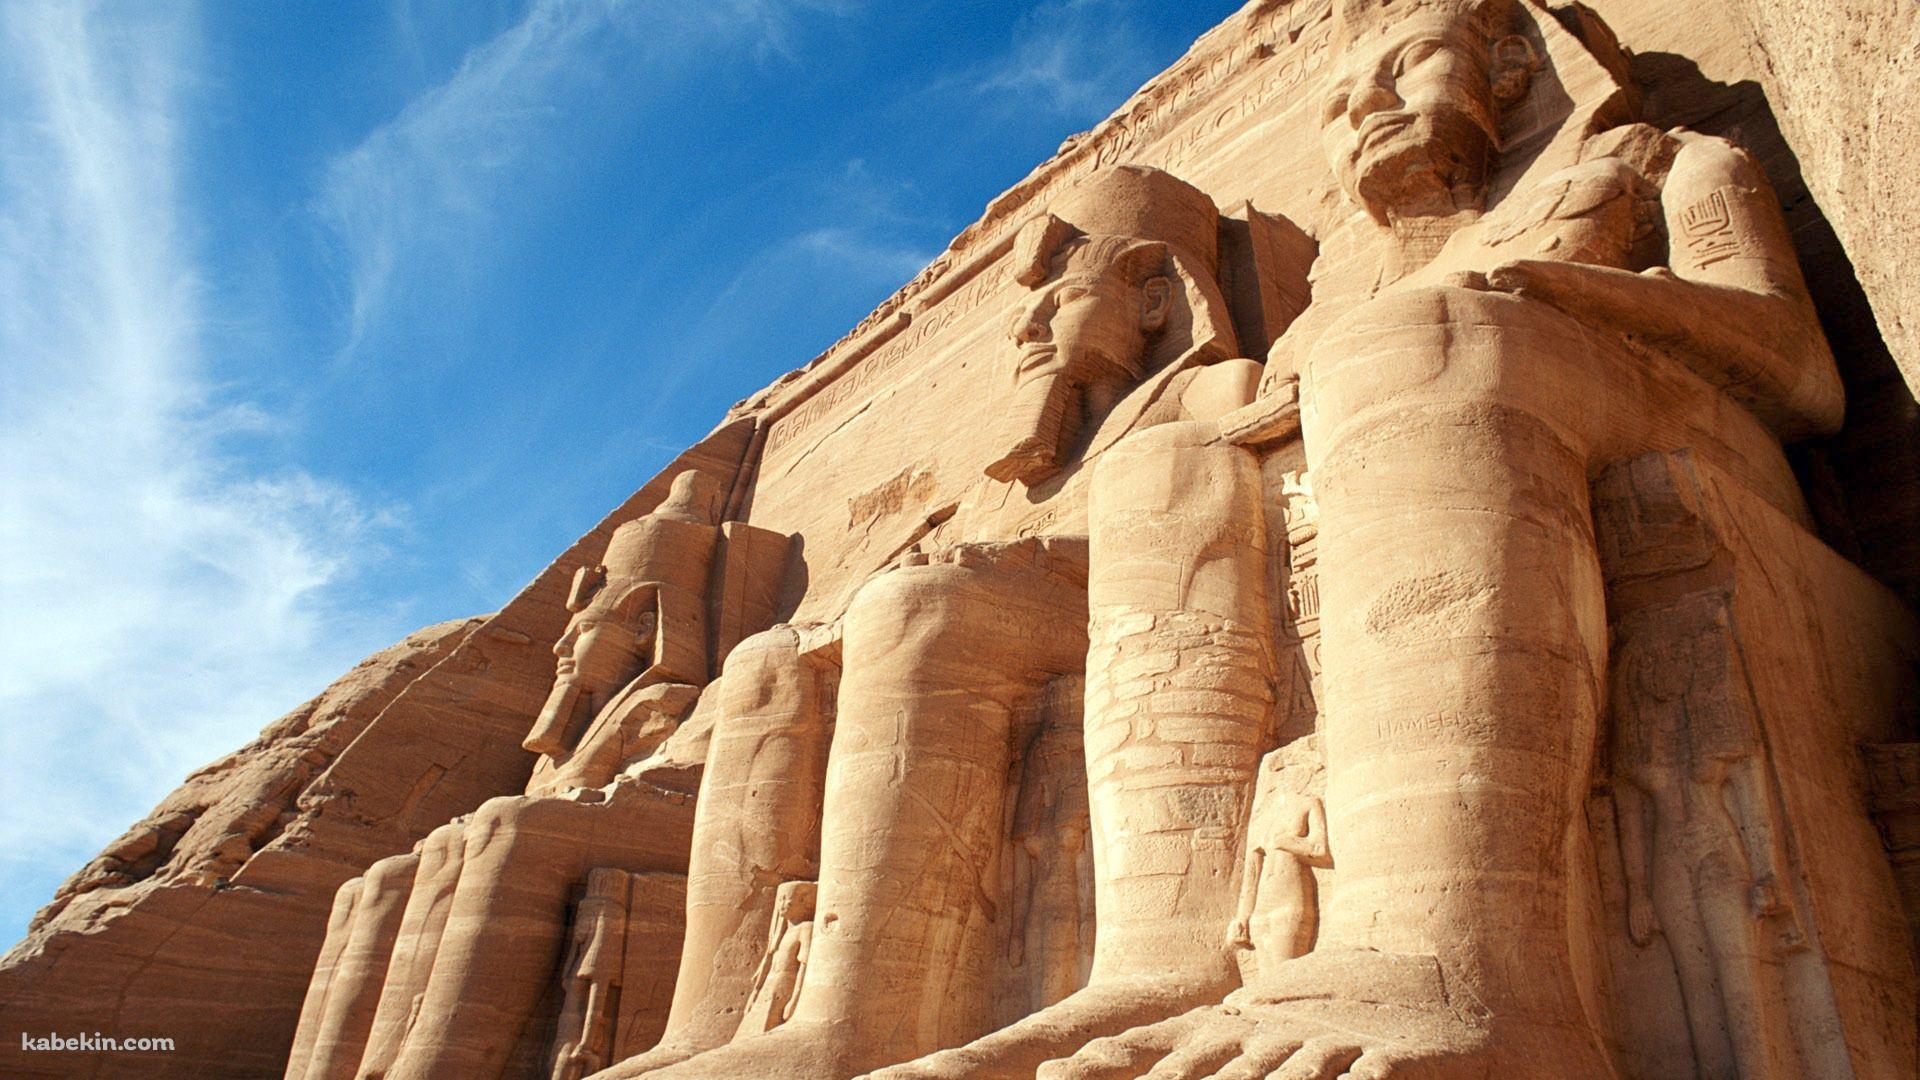 エジプトの寺院の壁紙(1920px x 1080px) 高画質 PC・デスクトップ用